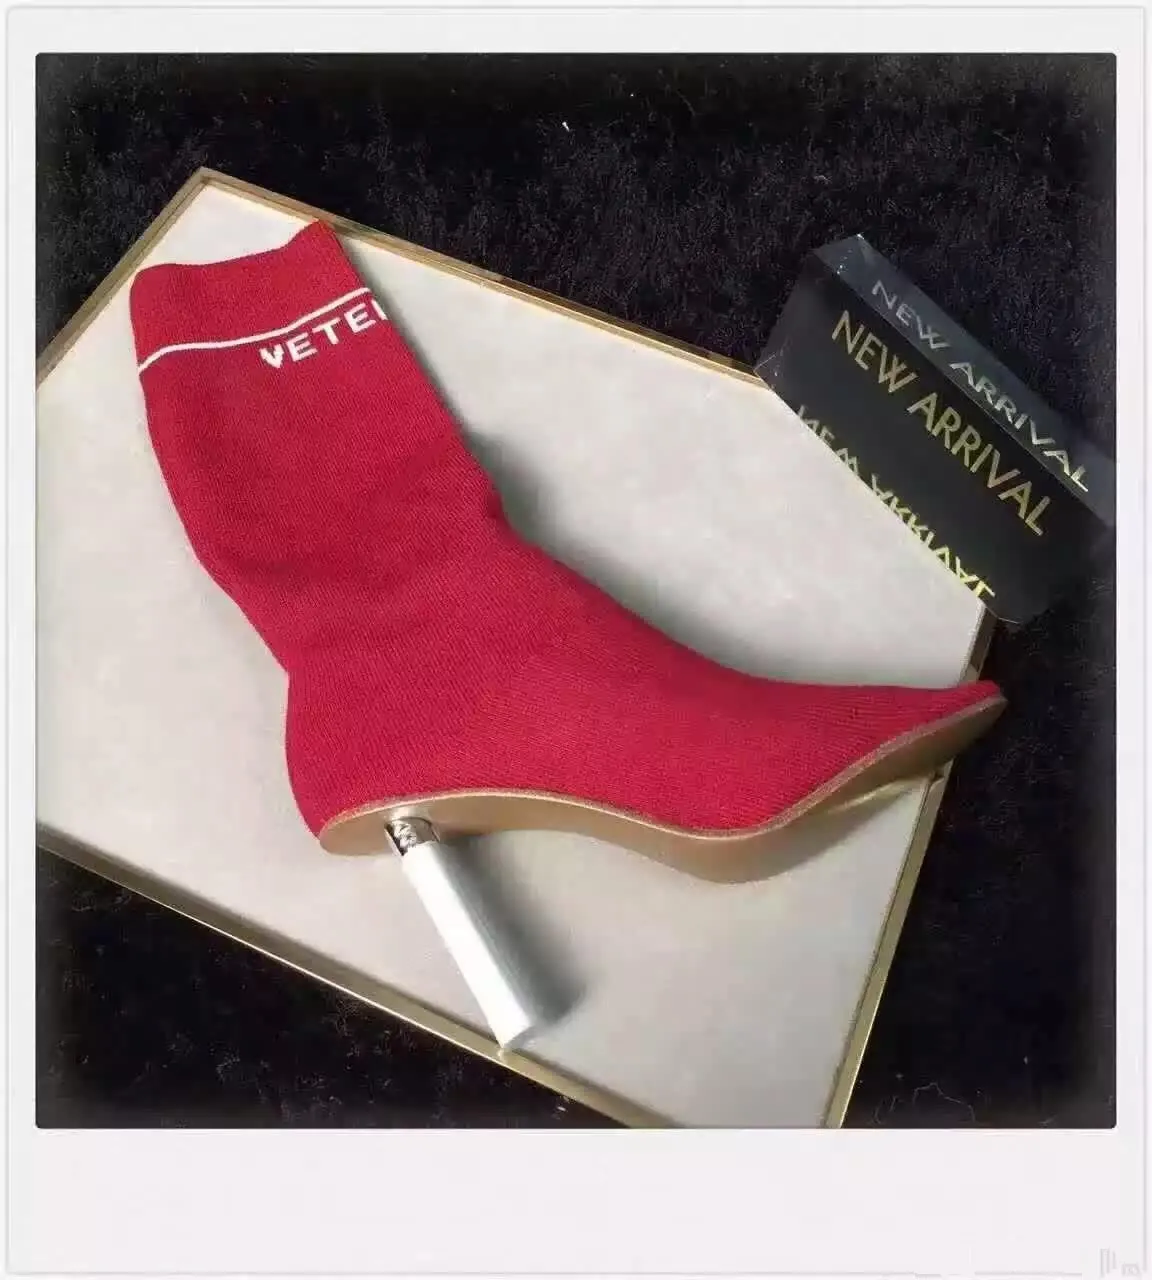 Vetements lighter sock heels | Socks and heels, Heels, Vetements